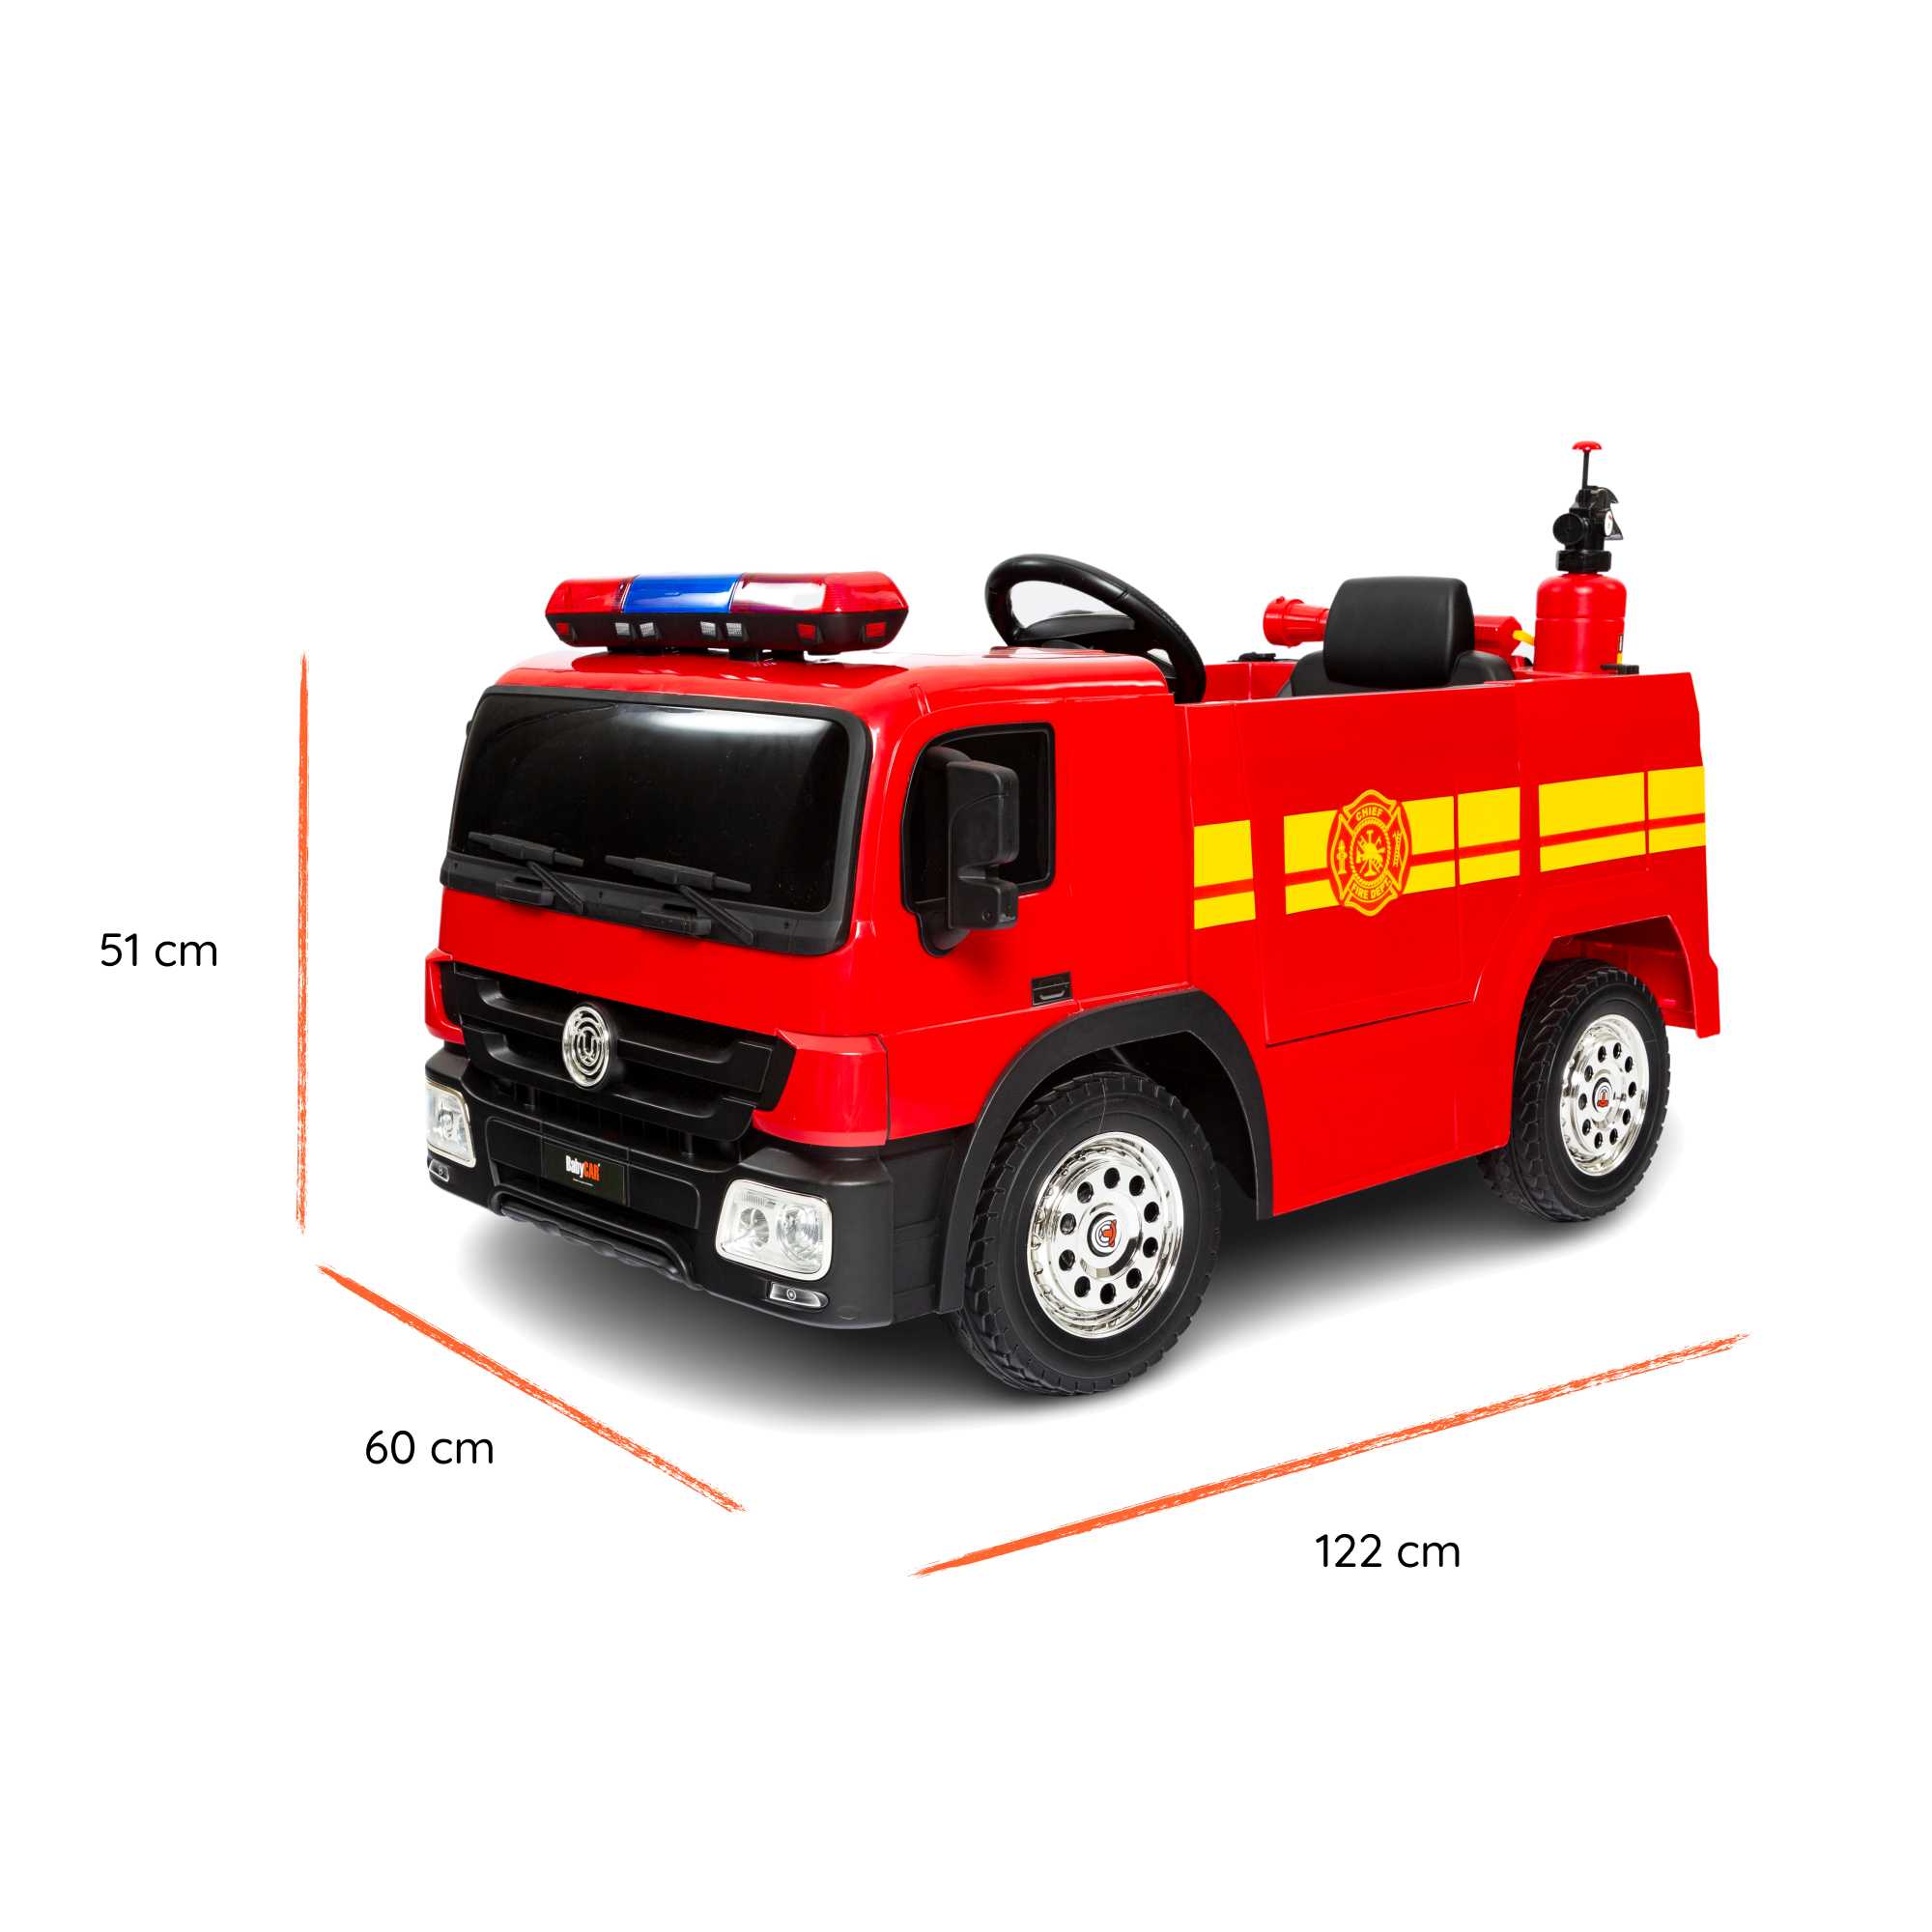 Camion dei Pompieri elettrico per bambini dimensioni